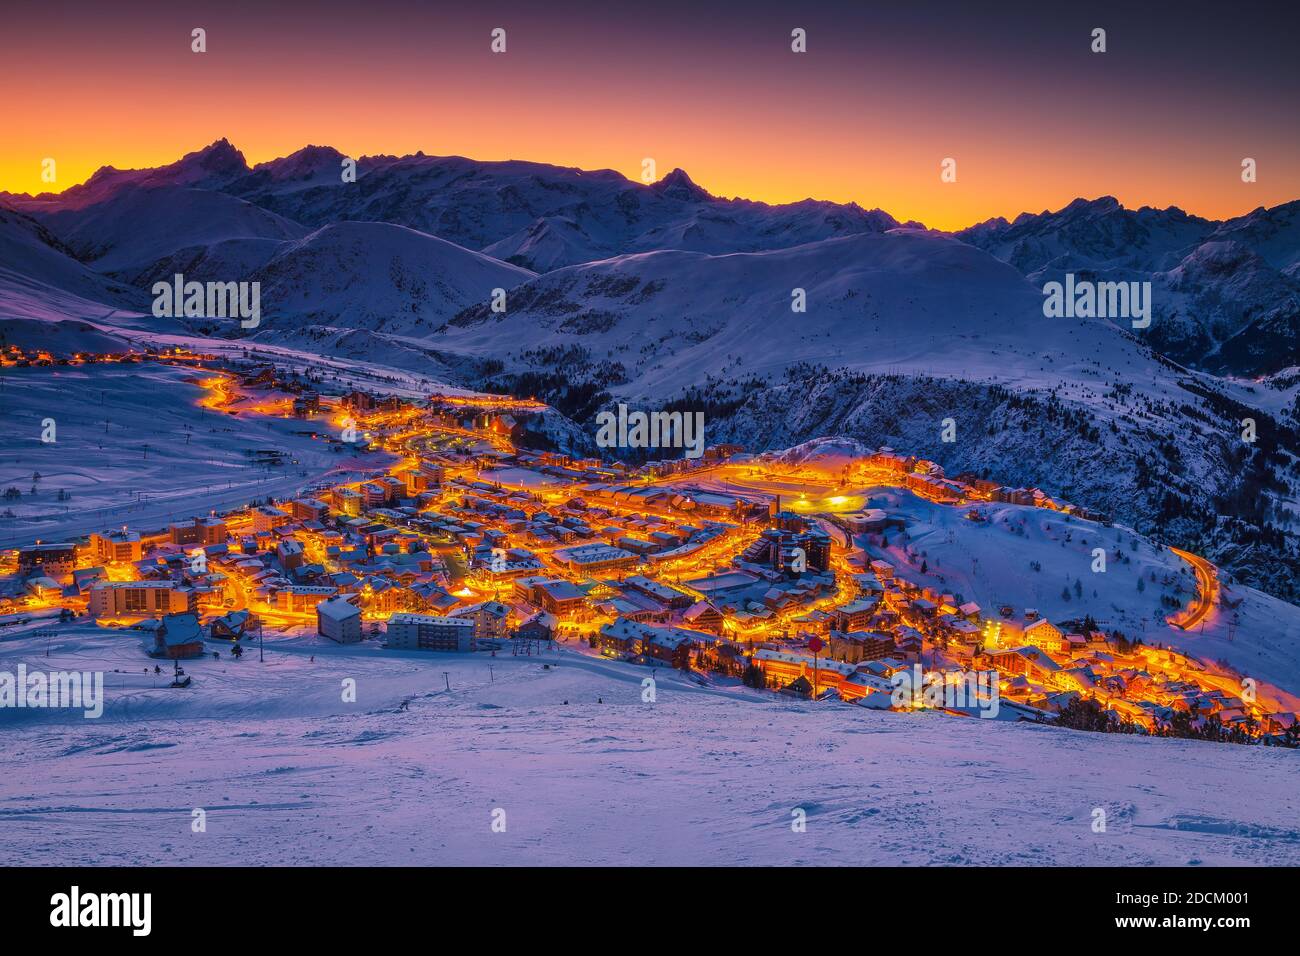 Fantástica estación de esquí de invierno con edificios al amanecer. Majestuosa estación y pistas de esquí al amanecer, Alpe d Huez, Ródano Alpes, Francia, Europa Foto de stock